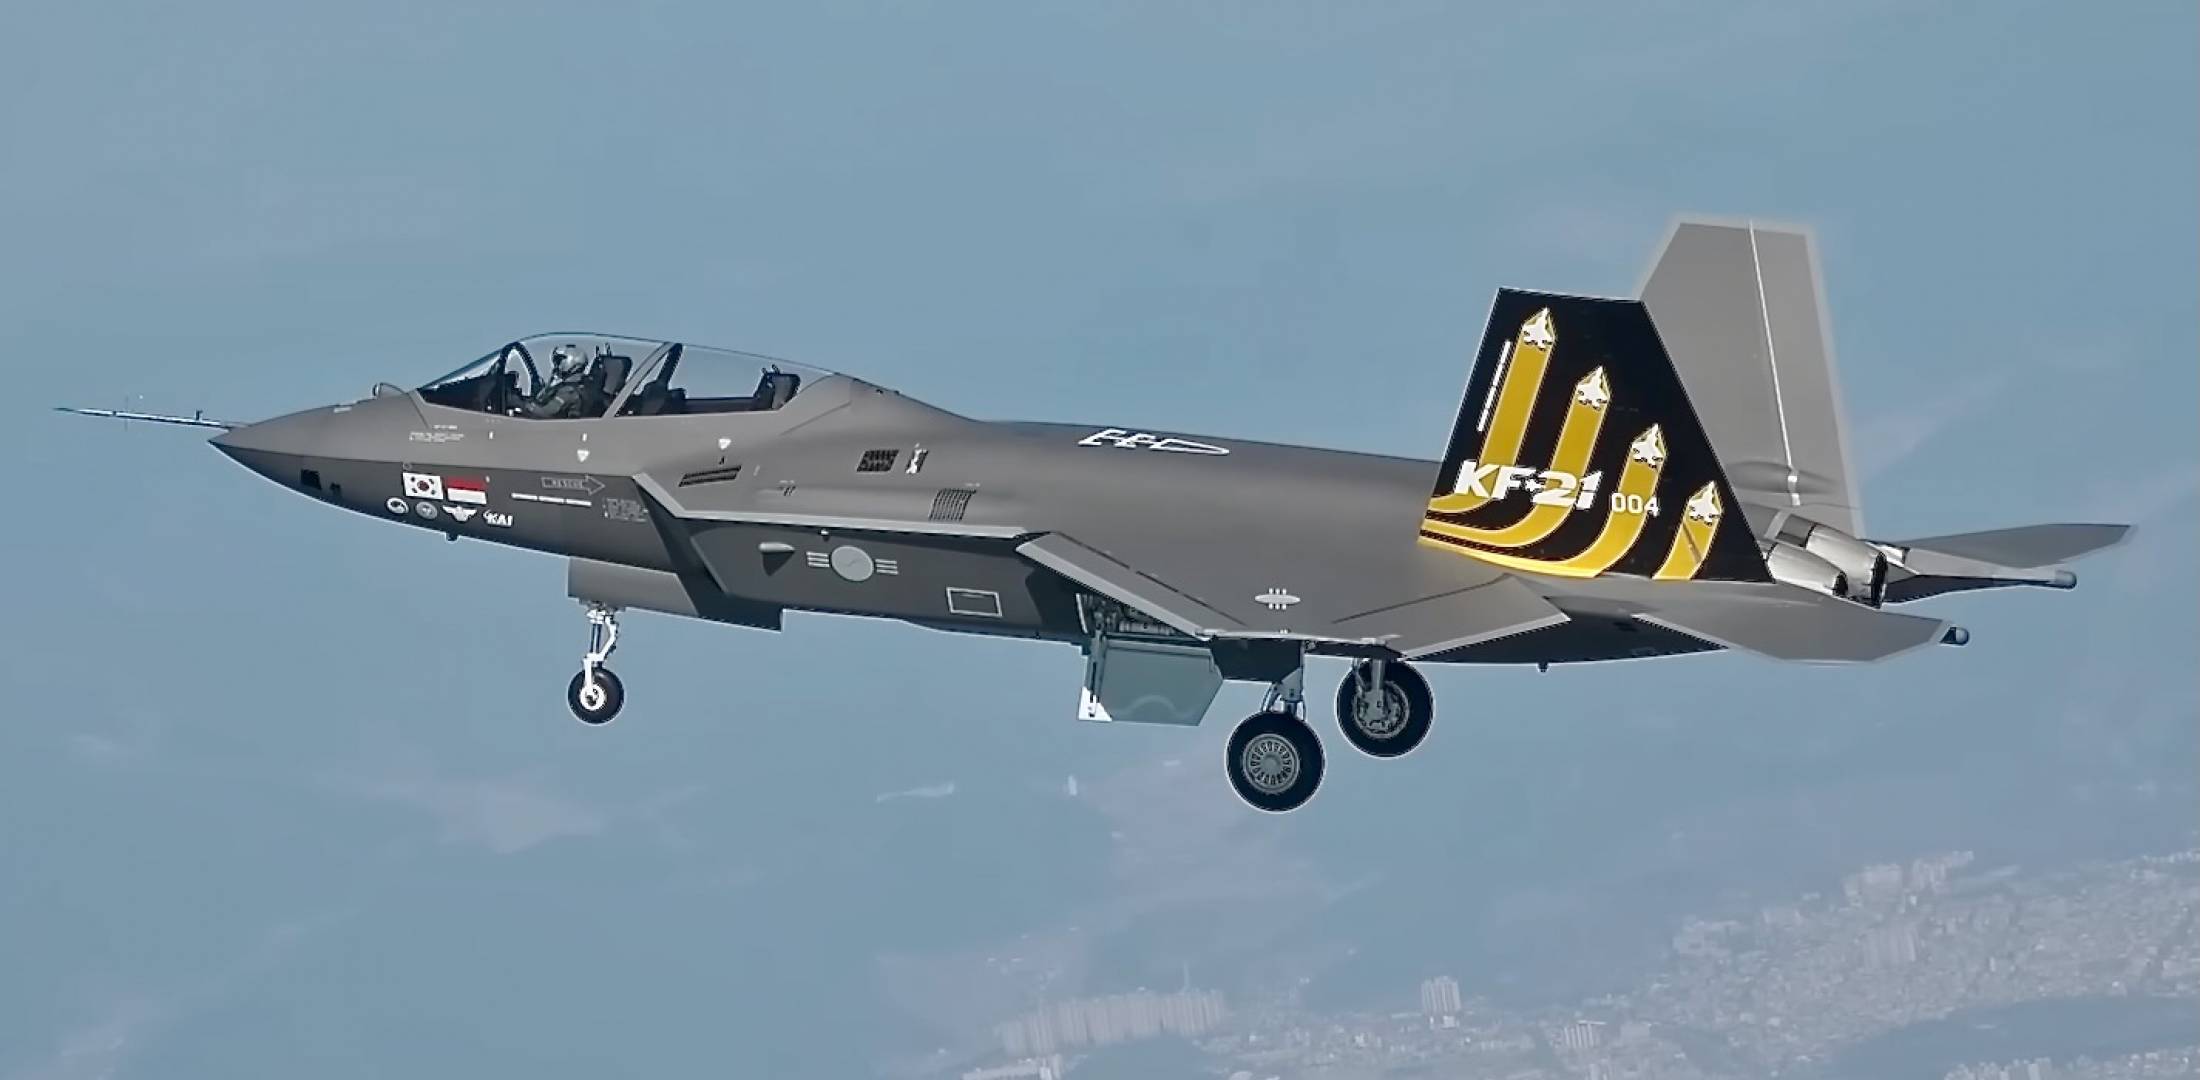 Il caccia KF-21 ha superato con successo la valutazione preliminare della capacità operativa